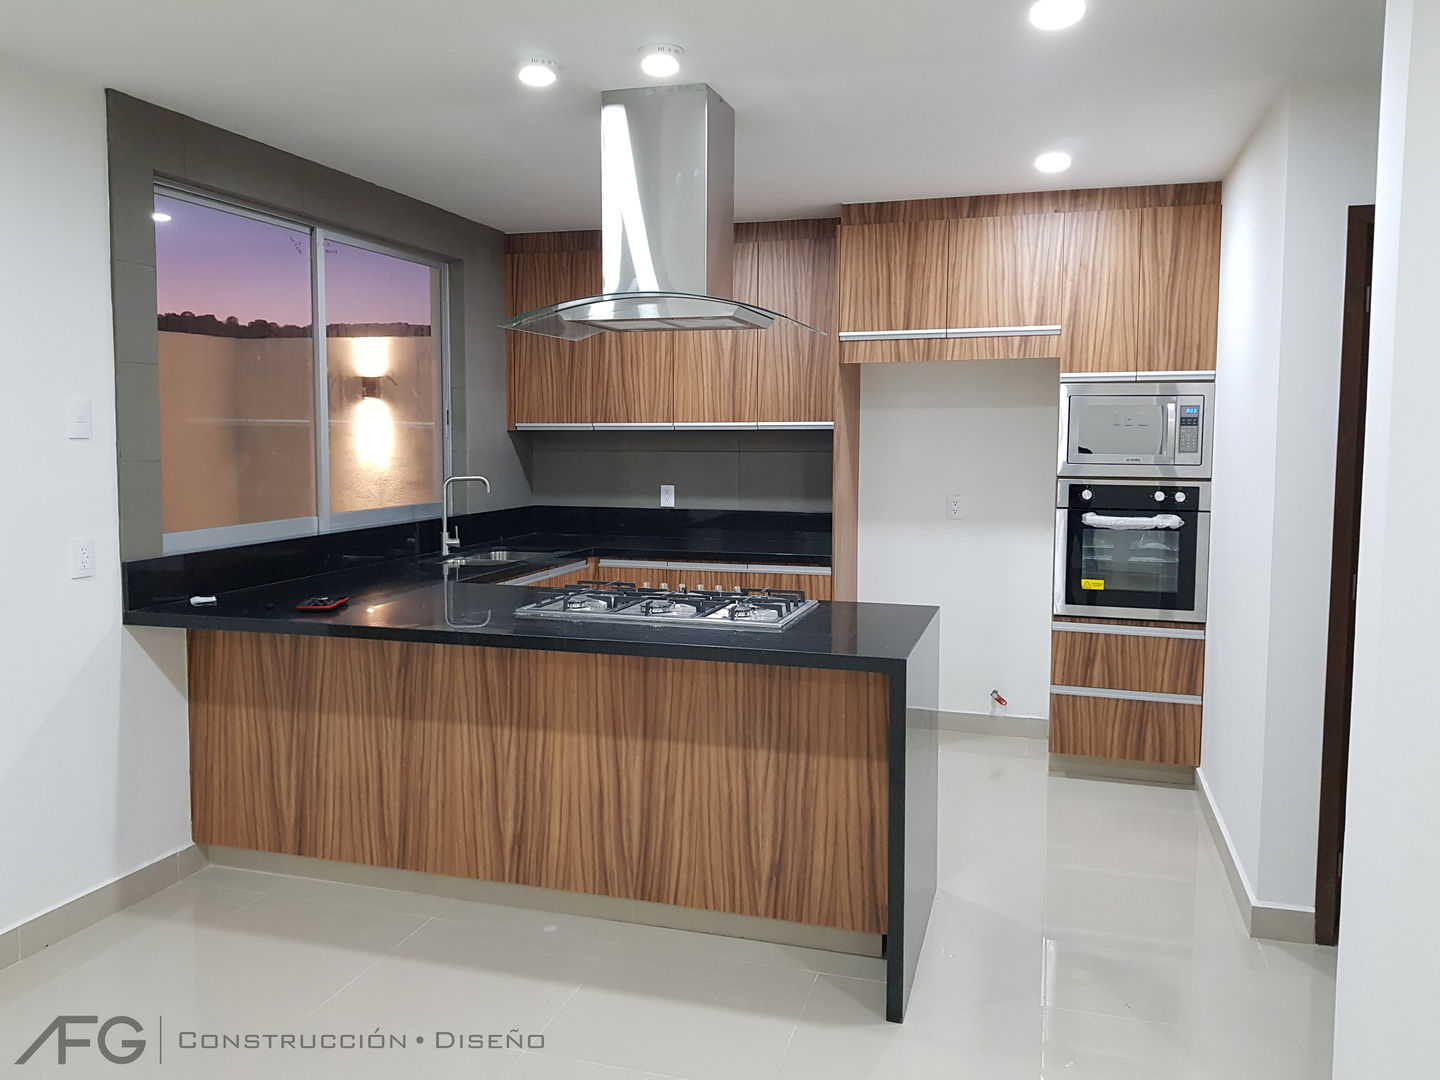 Casa Foresta, ANBA interiorismo ANBA interiorismo Built-in kitchens